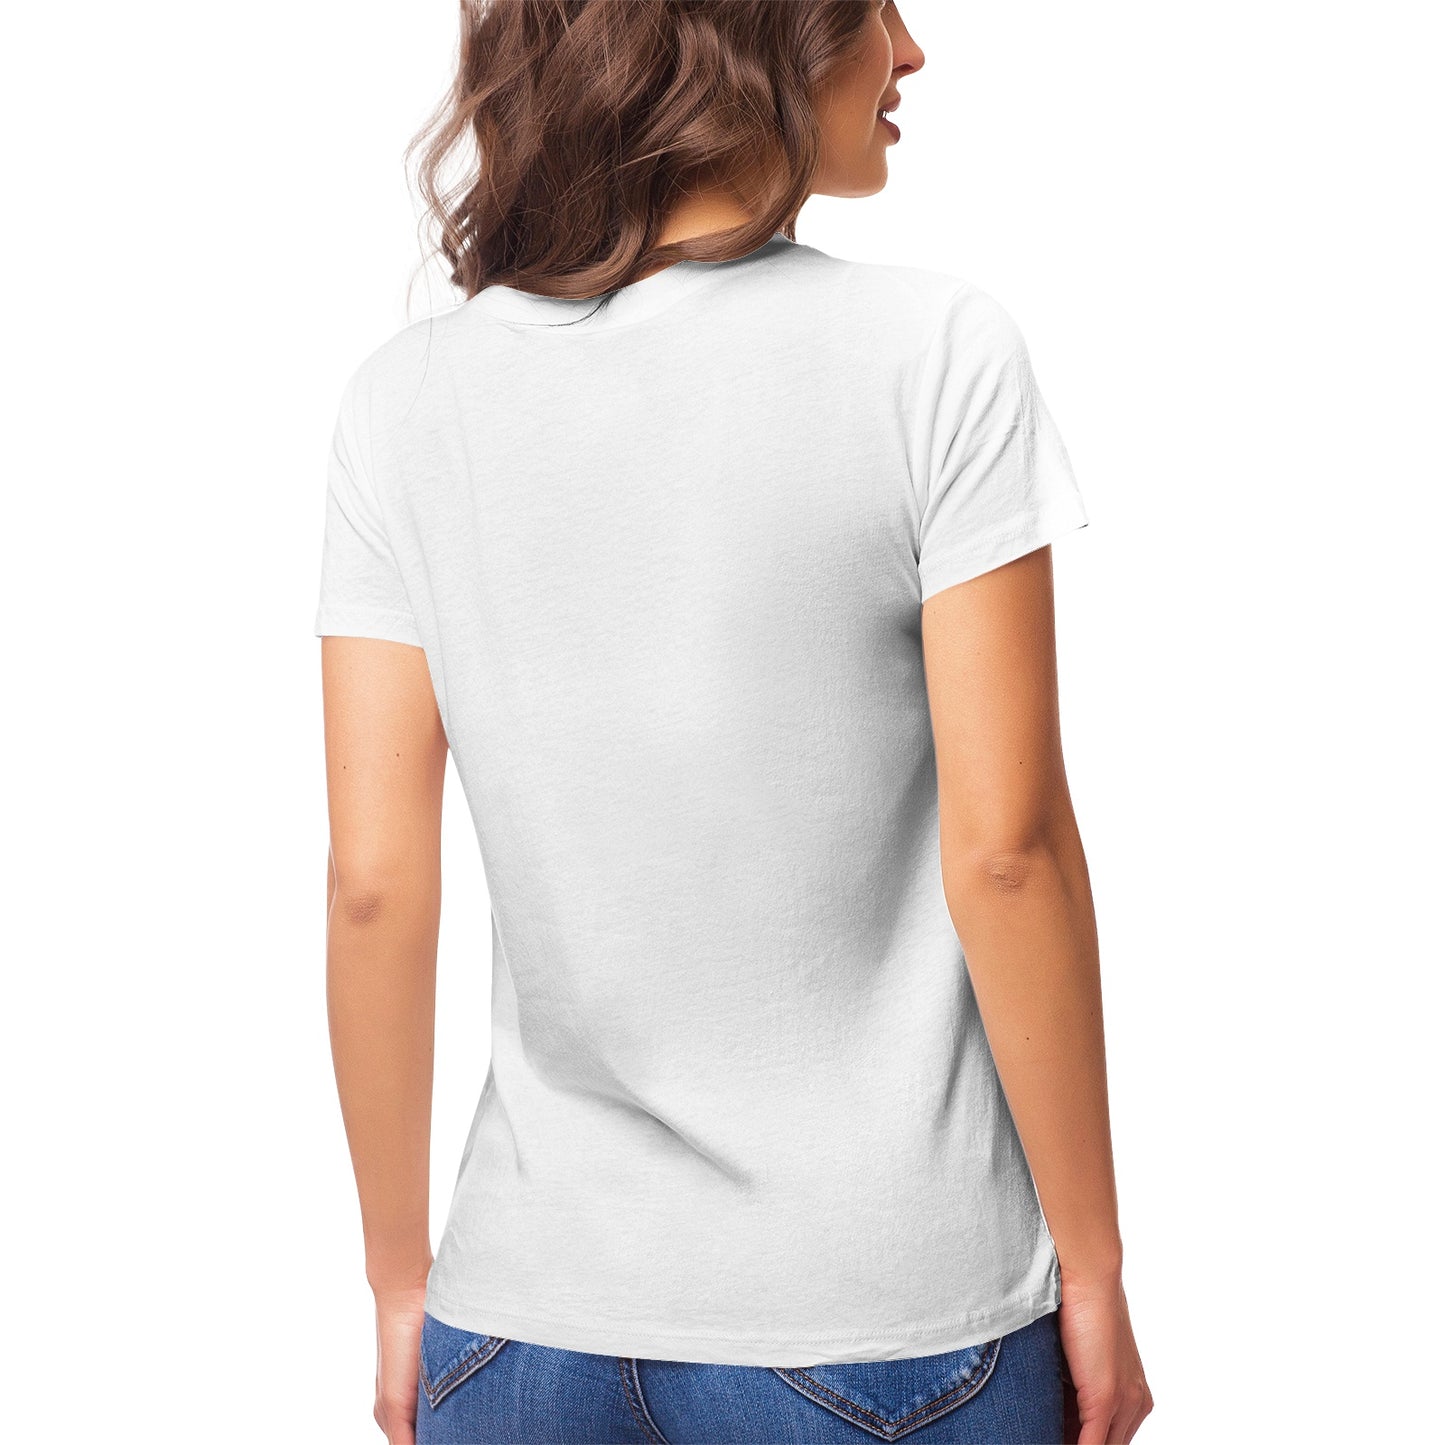 Fantasy 4 Women's Ultrasoft Pima Cotton T‑shirt - DromedarShop.com Online Boutique